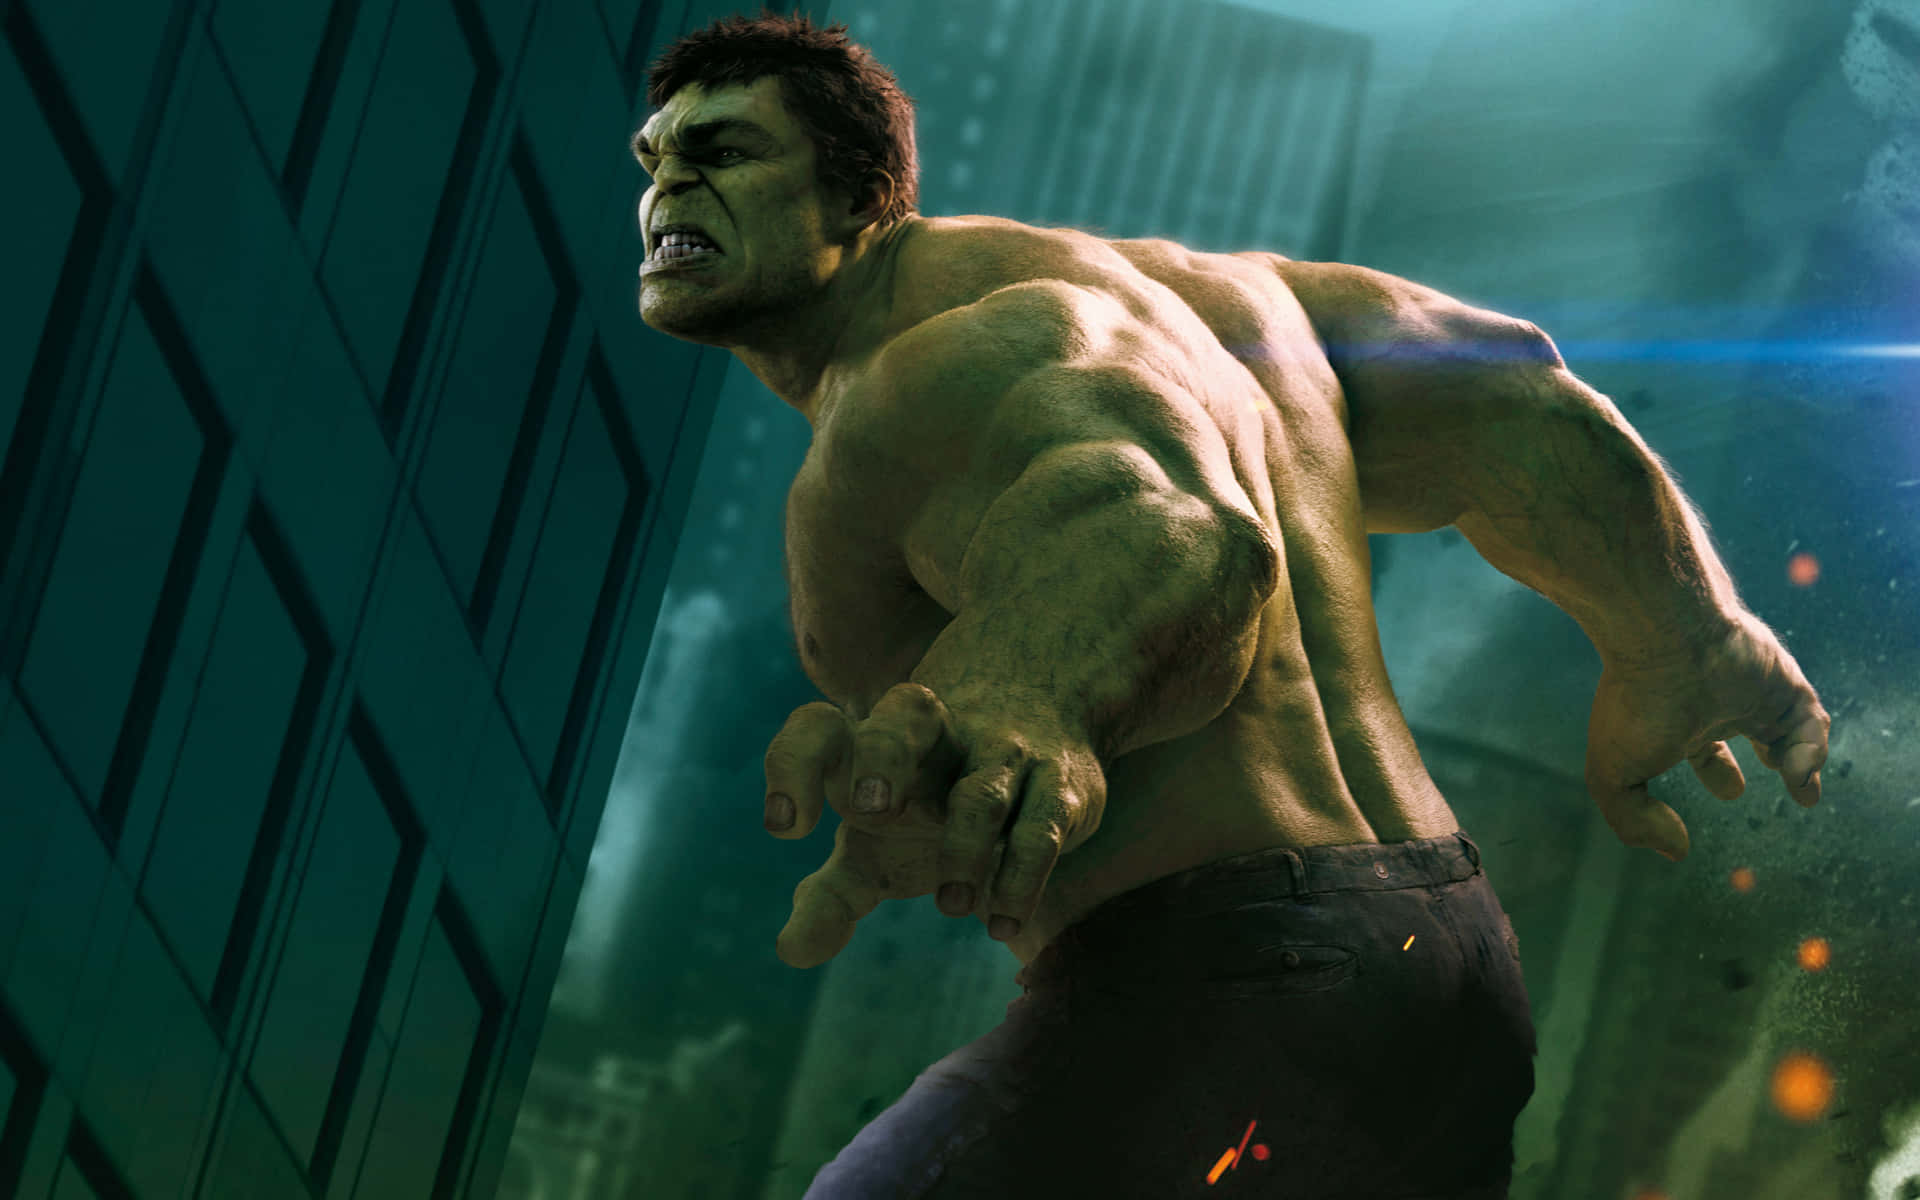 Seinestärke Zeigen - Der Unglaubliche Hulk